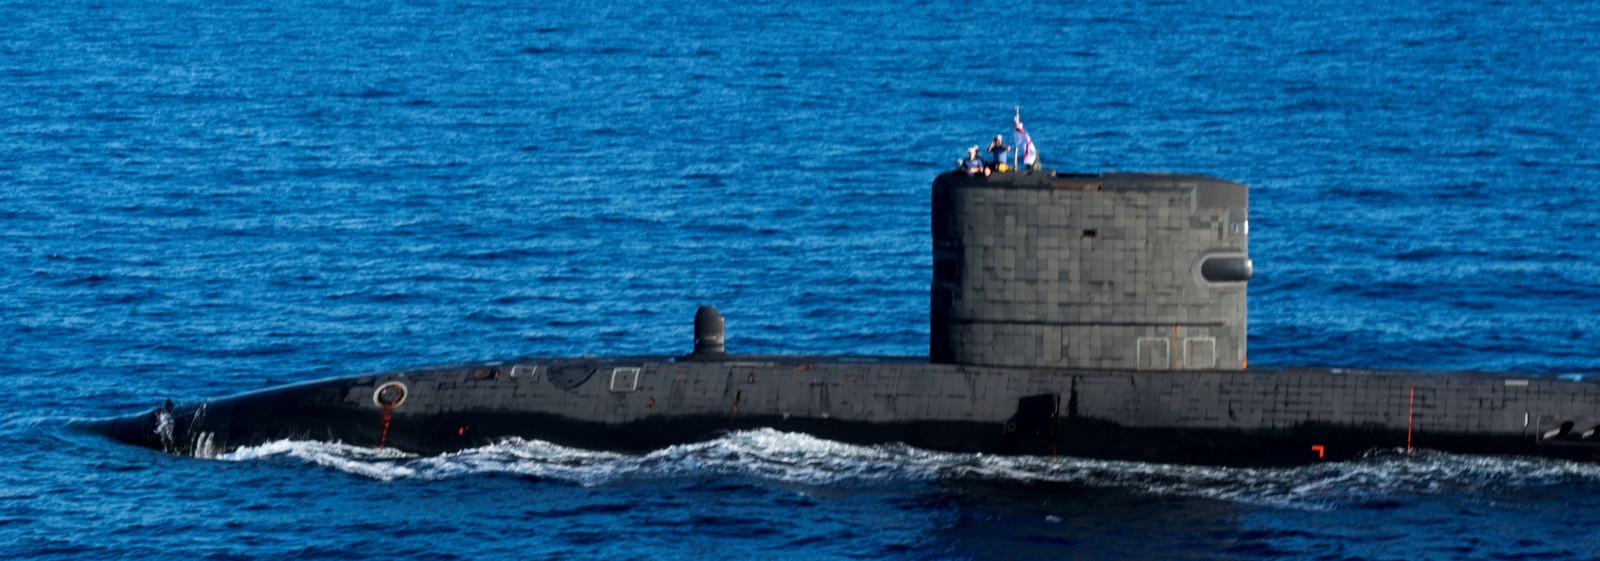 s92 hms talent trafalgar class attack submarine hunter killer royal navy 02